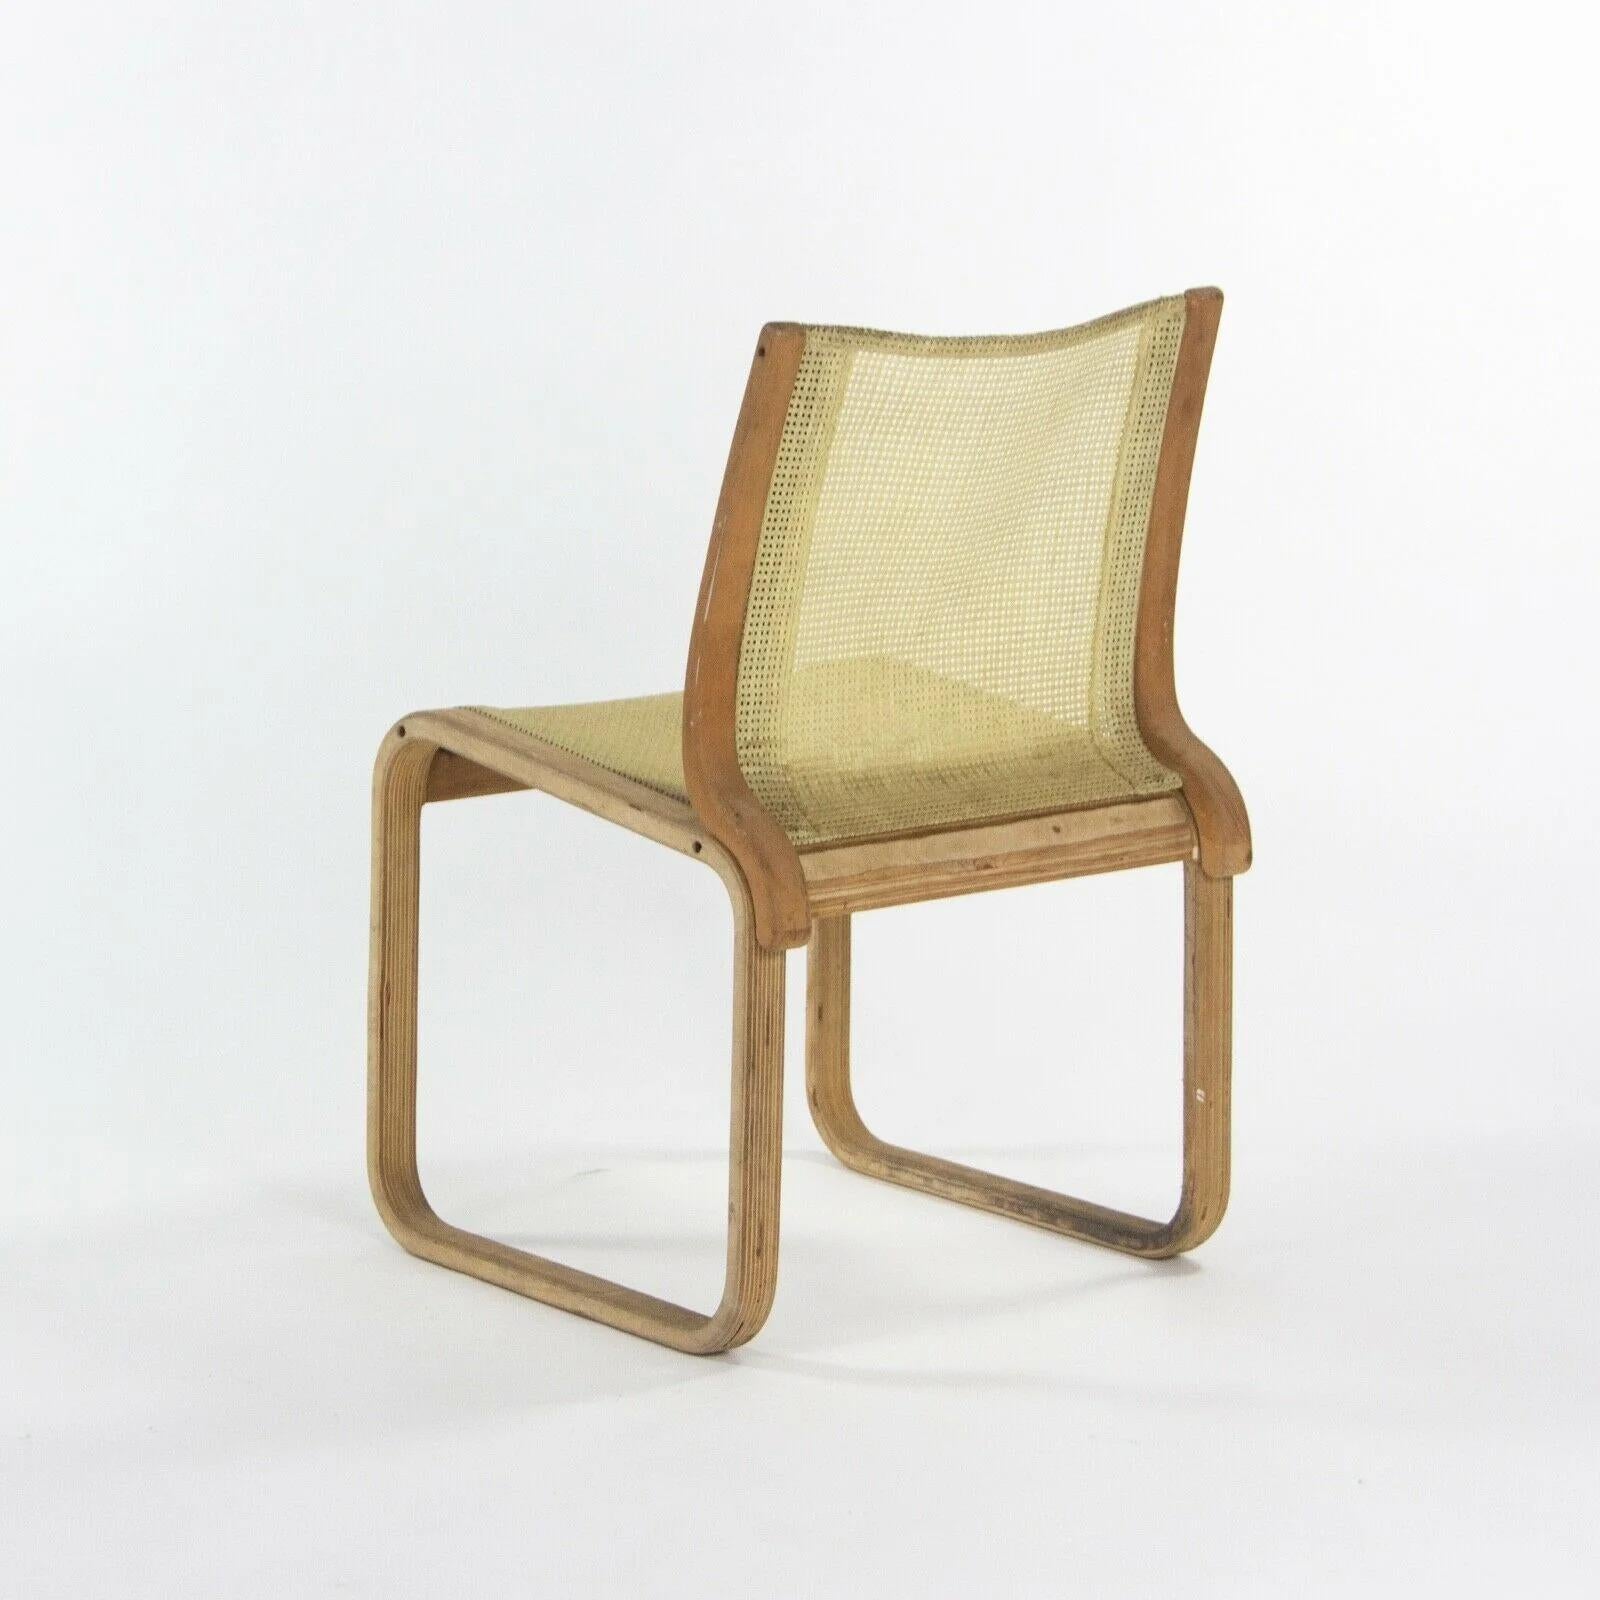 Bois cintré Prototype de chaise de salle à manger de la collection extérieure Richard Schultz en bois, 1985